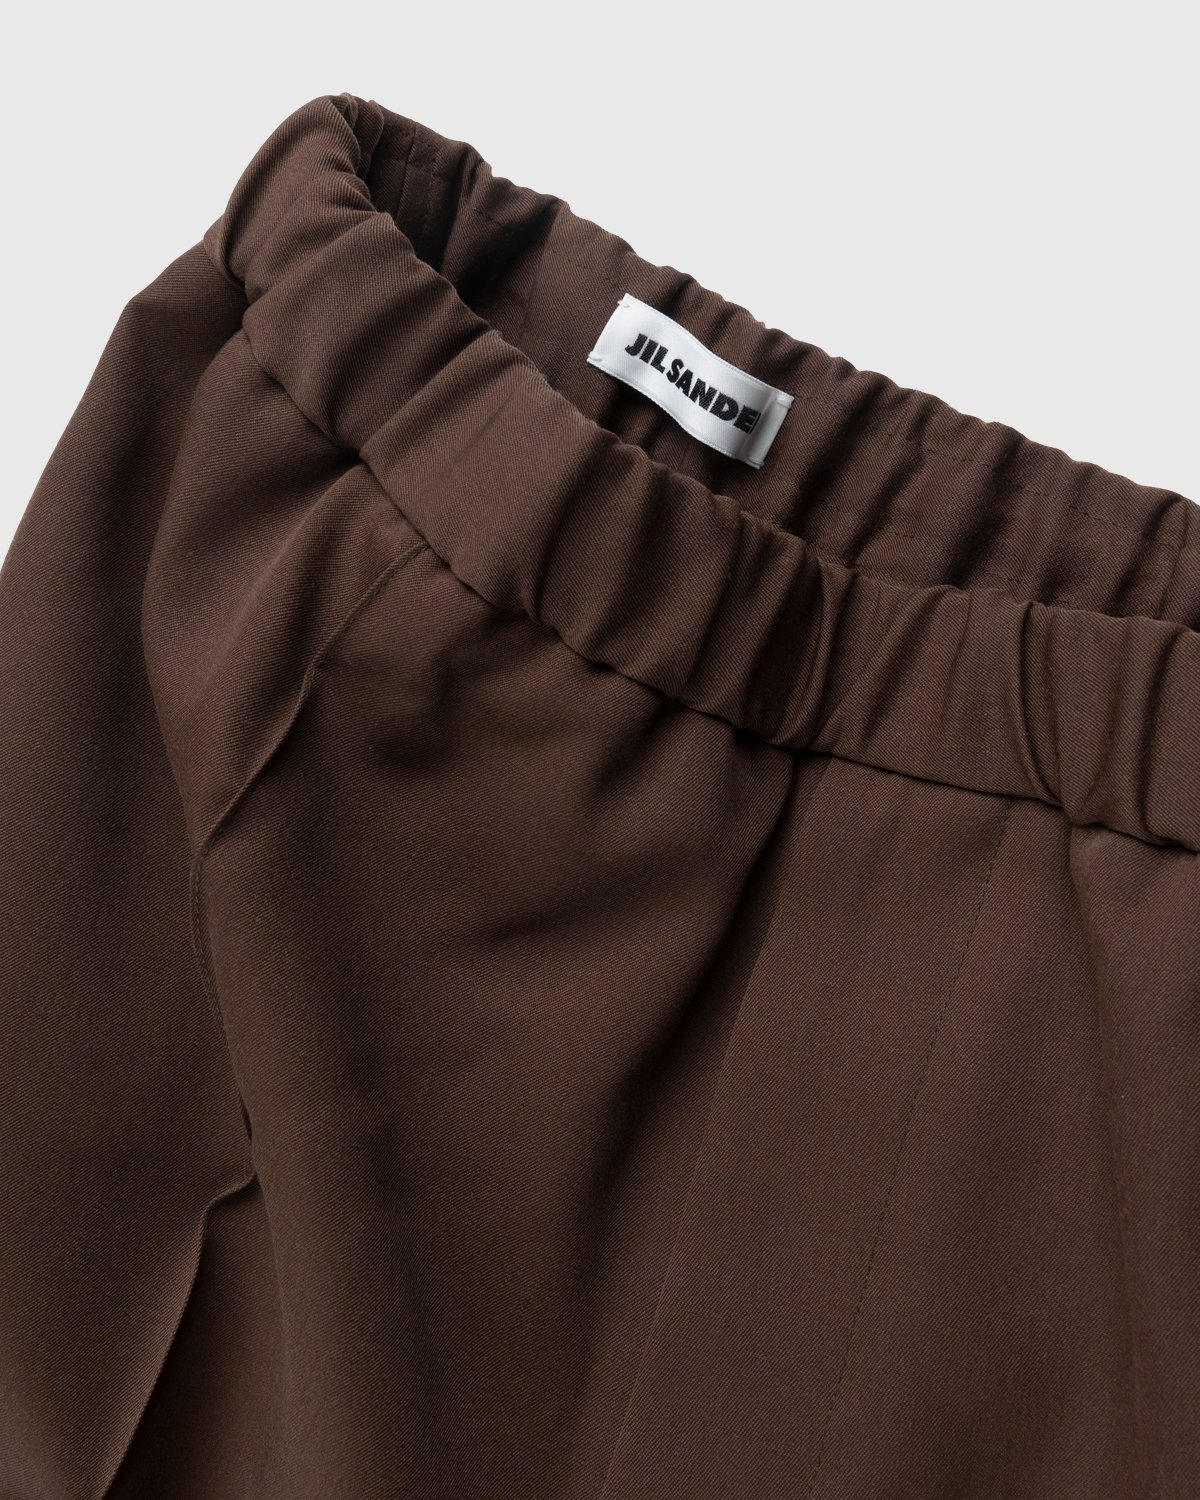 Jil Sander - Wool Trousers Medium Brown - Clothing - Brown - Image 3